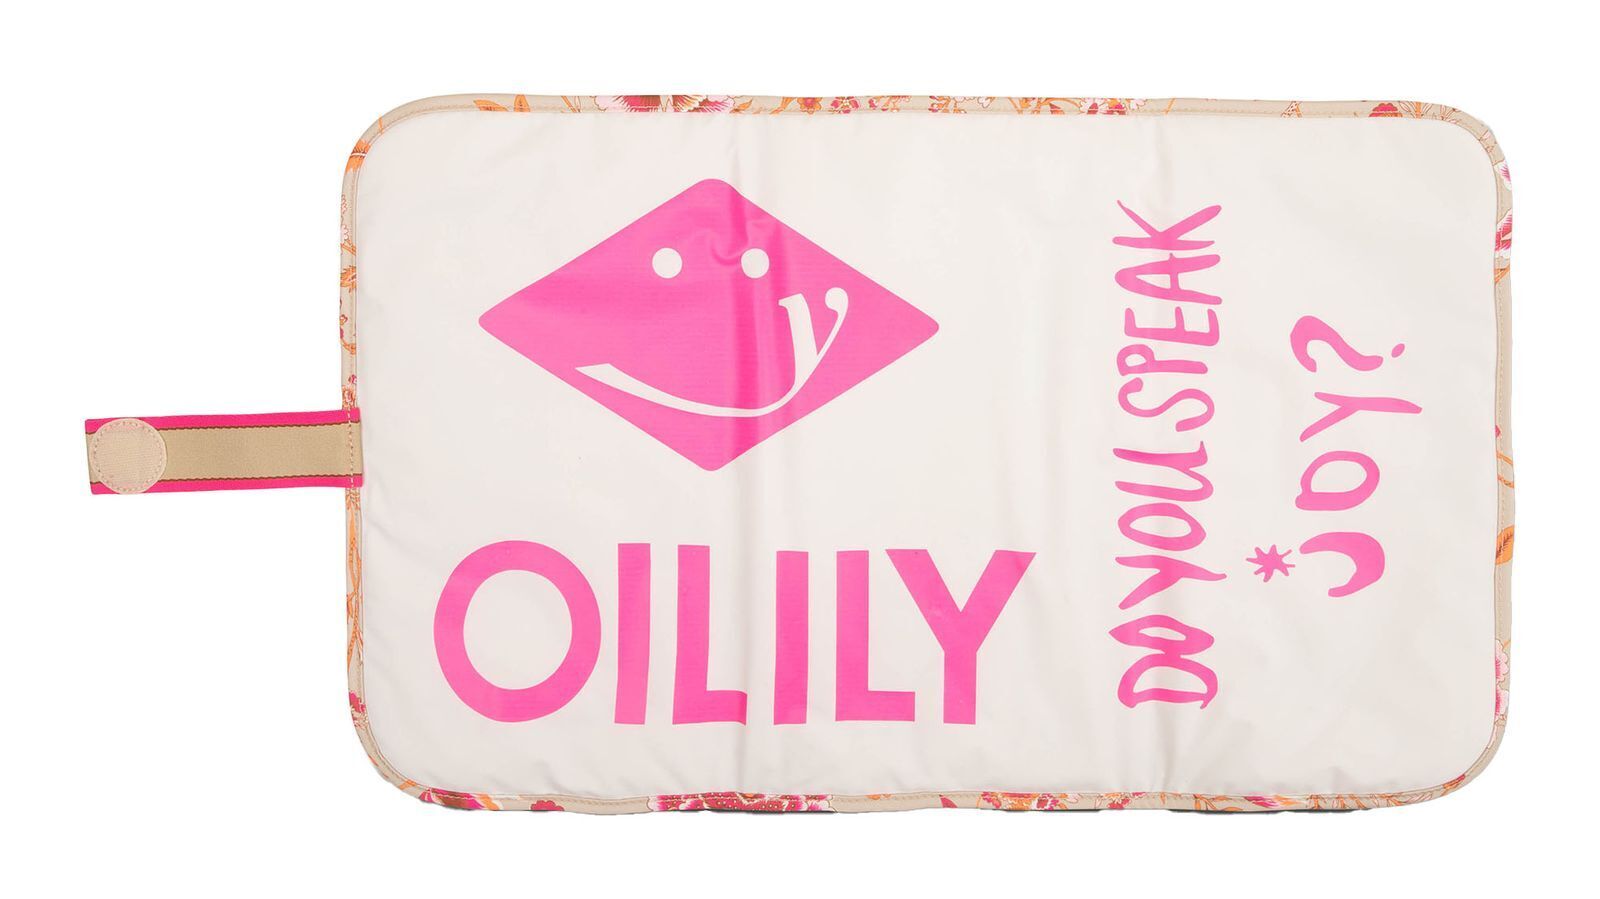 Oilily Bibi Baby Bag Sits Icon Wickeltasche Wickelauflage Tasche Pink beige pink